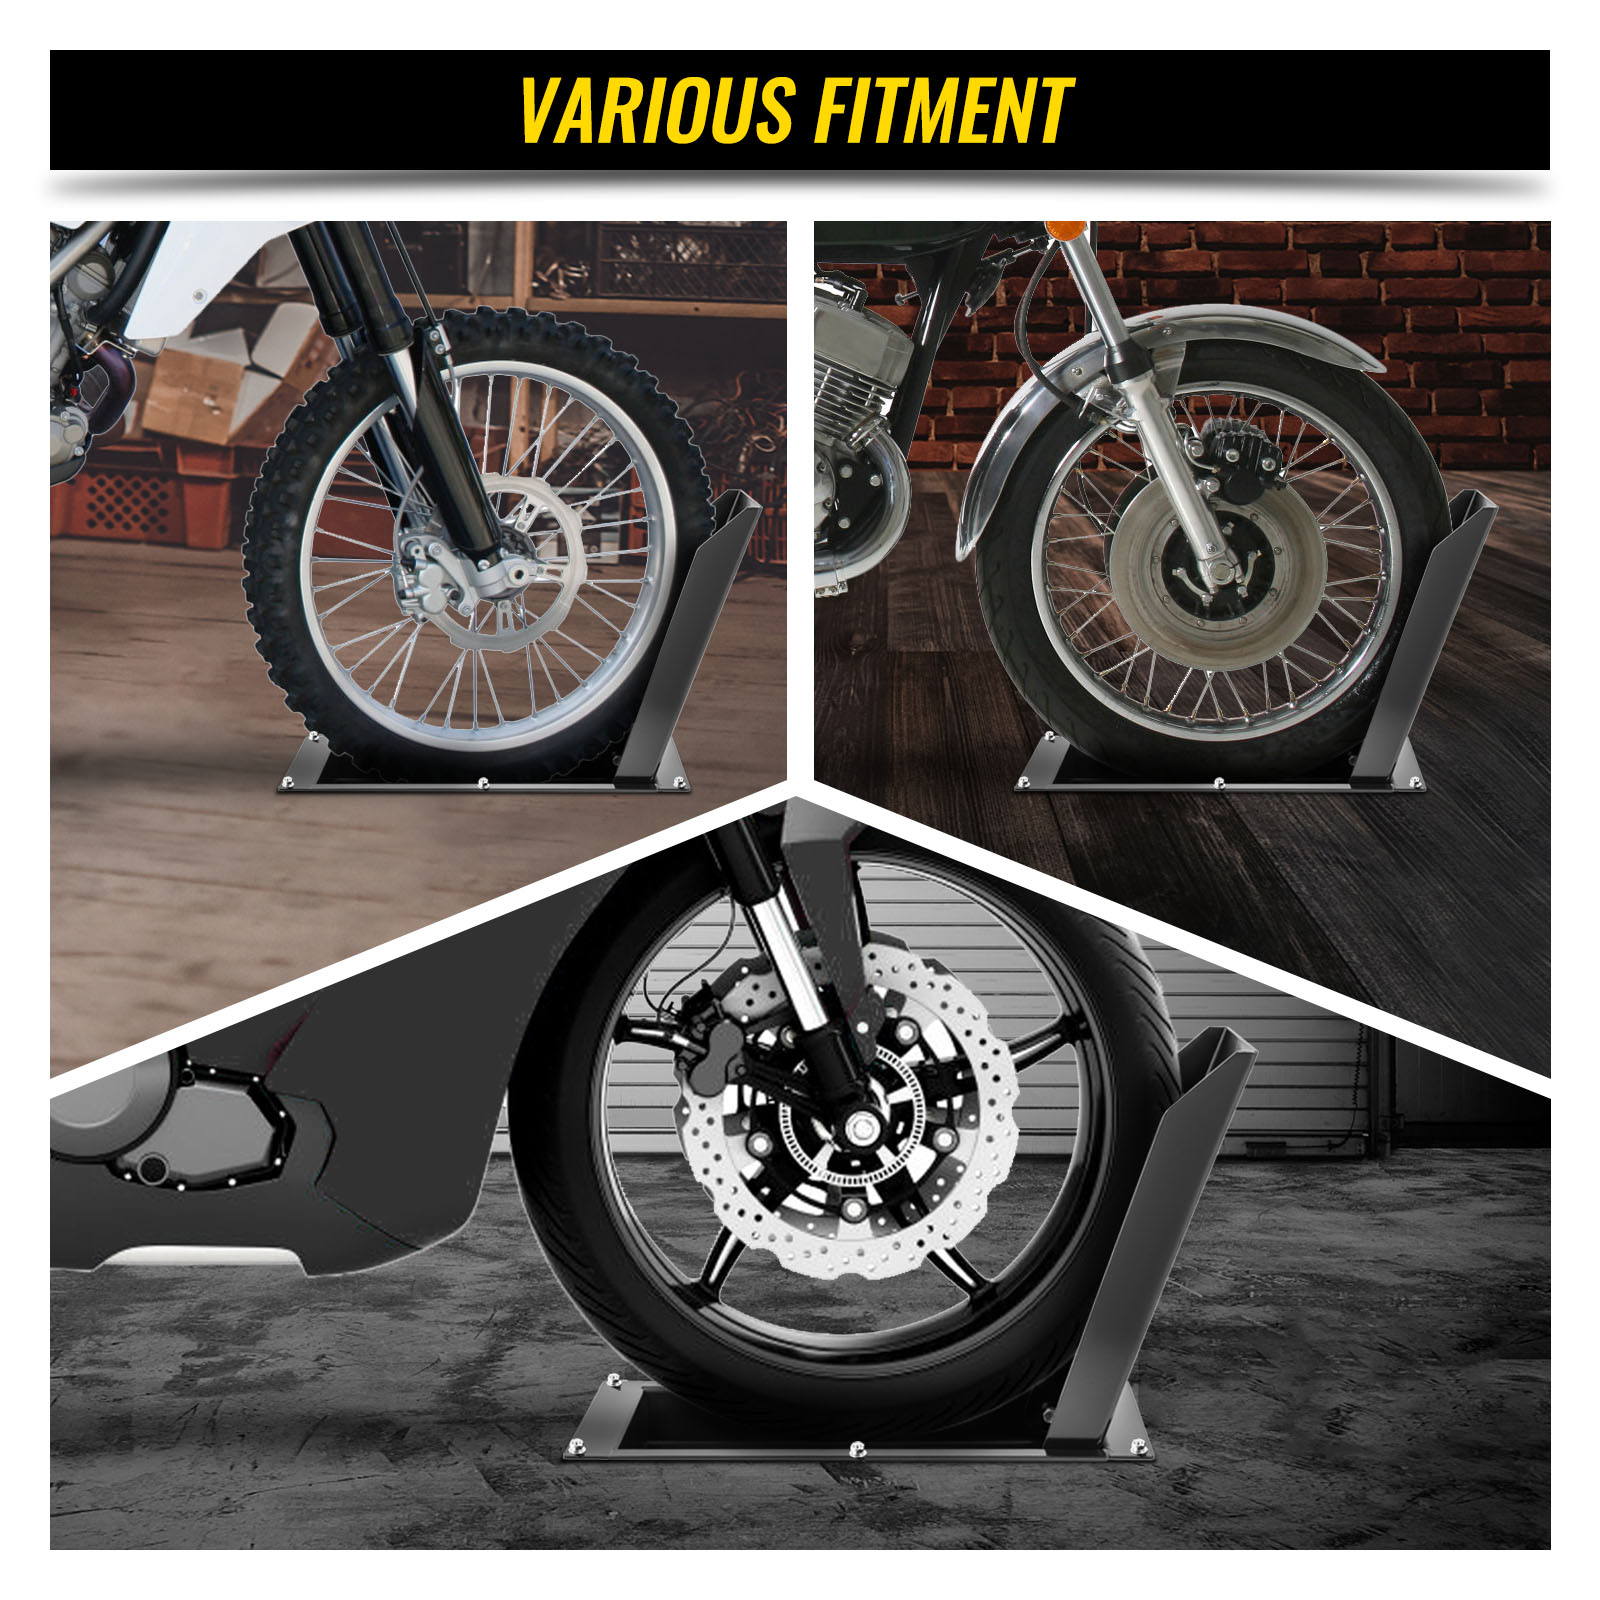 Calzo para rueda de motocicleta VEVOR, soporte para rueda de 1800 libras de  capacidad, soporte para rueda delantera de motocicleta de acero resistente